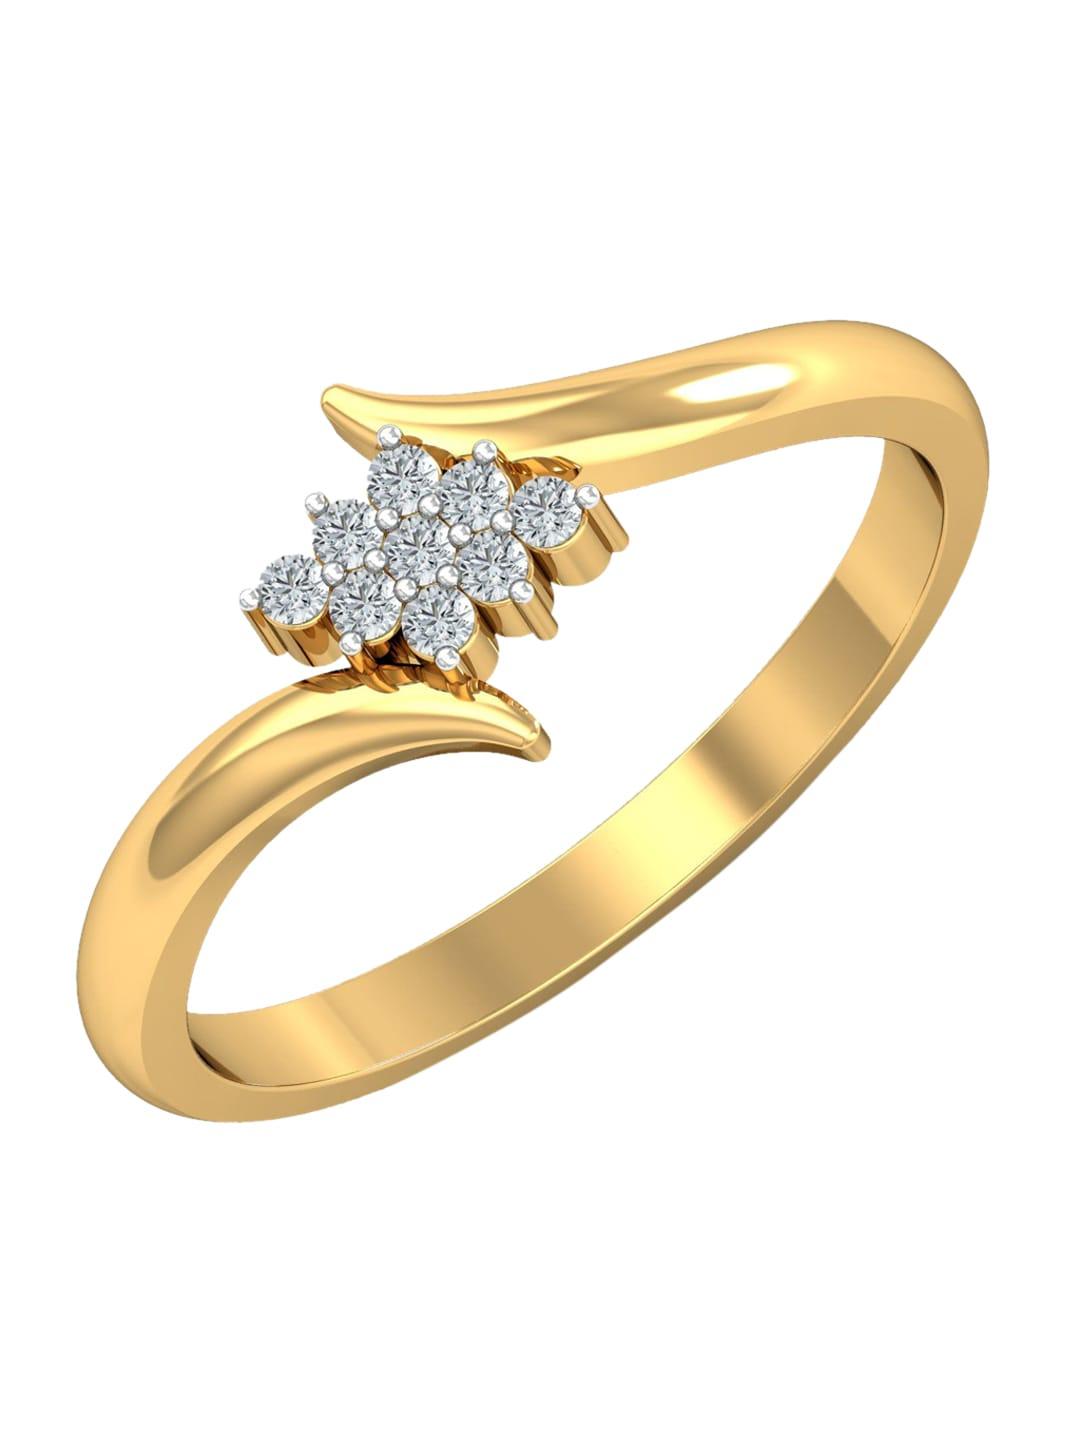 kuberbox love lusture 18kt gold diamond-studded finger ring-2.79gm